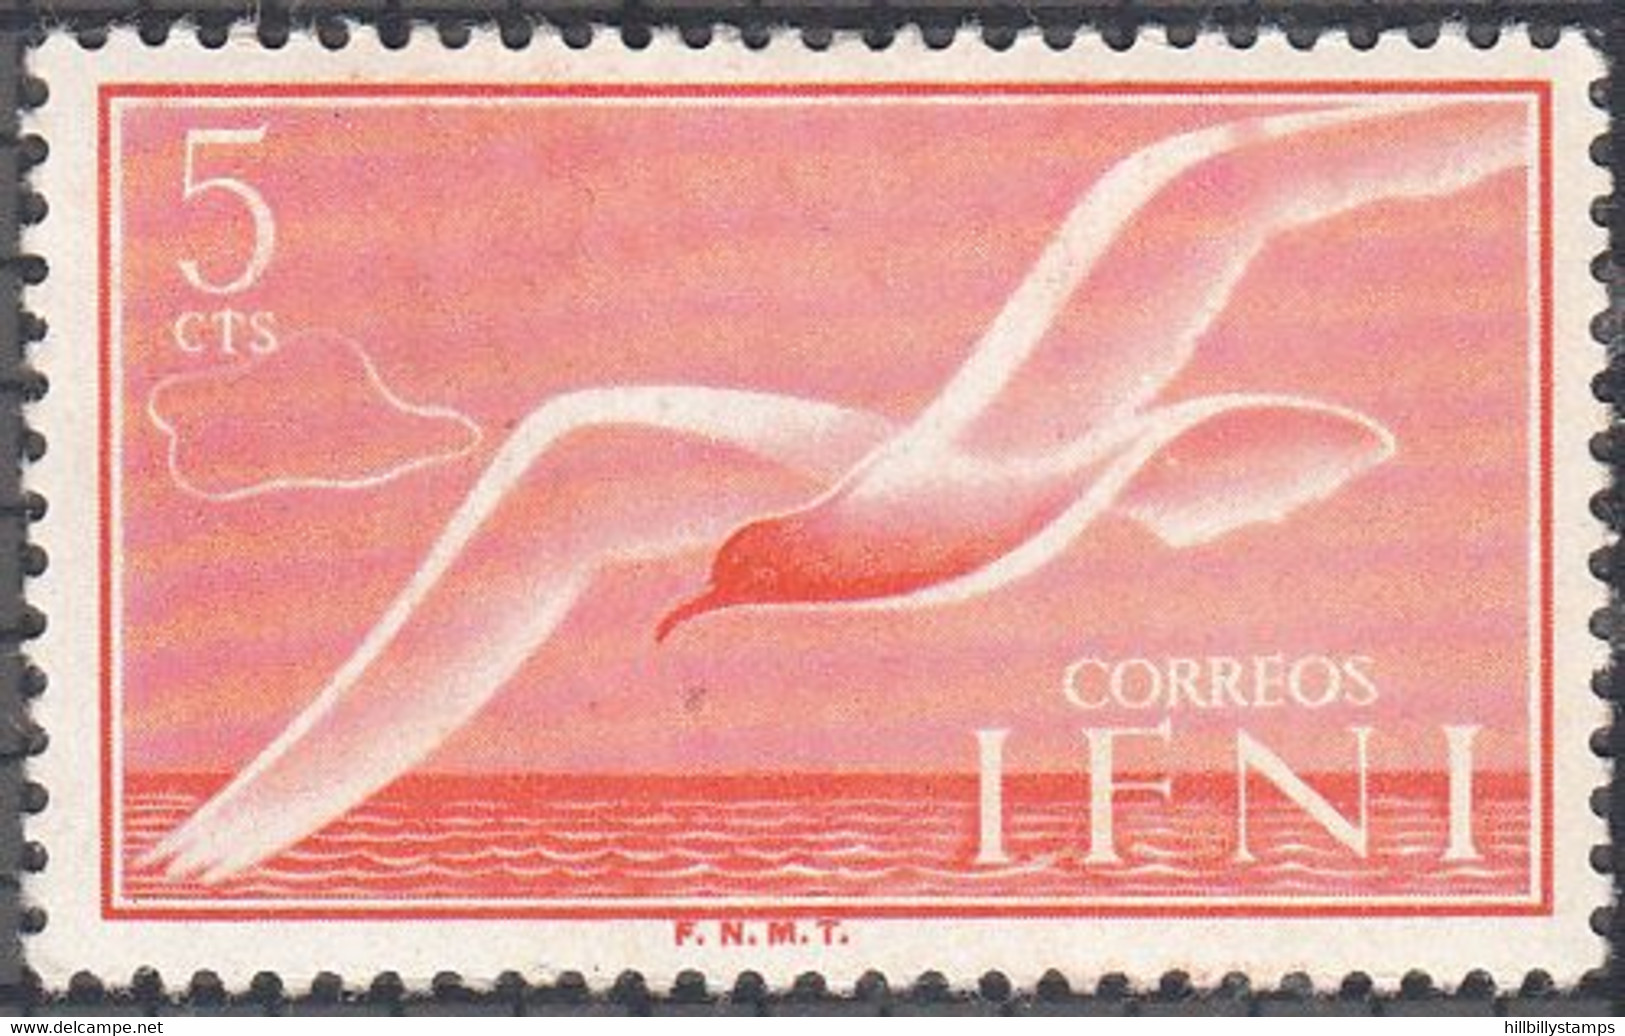 IFNI   SCOTT NO  61  MNH   YEAR  1954 - Ifni